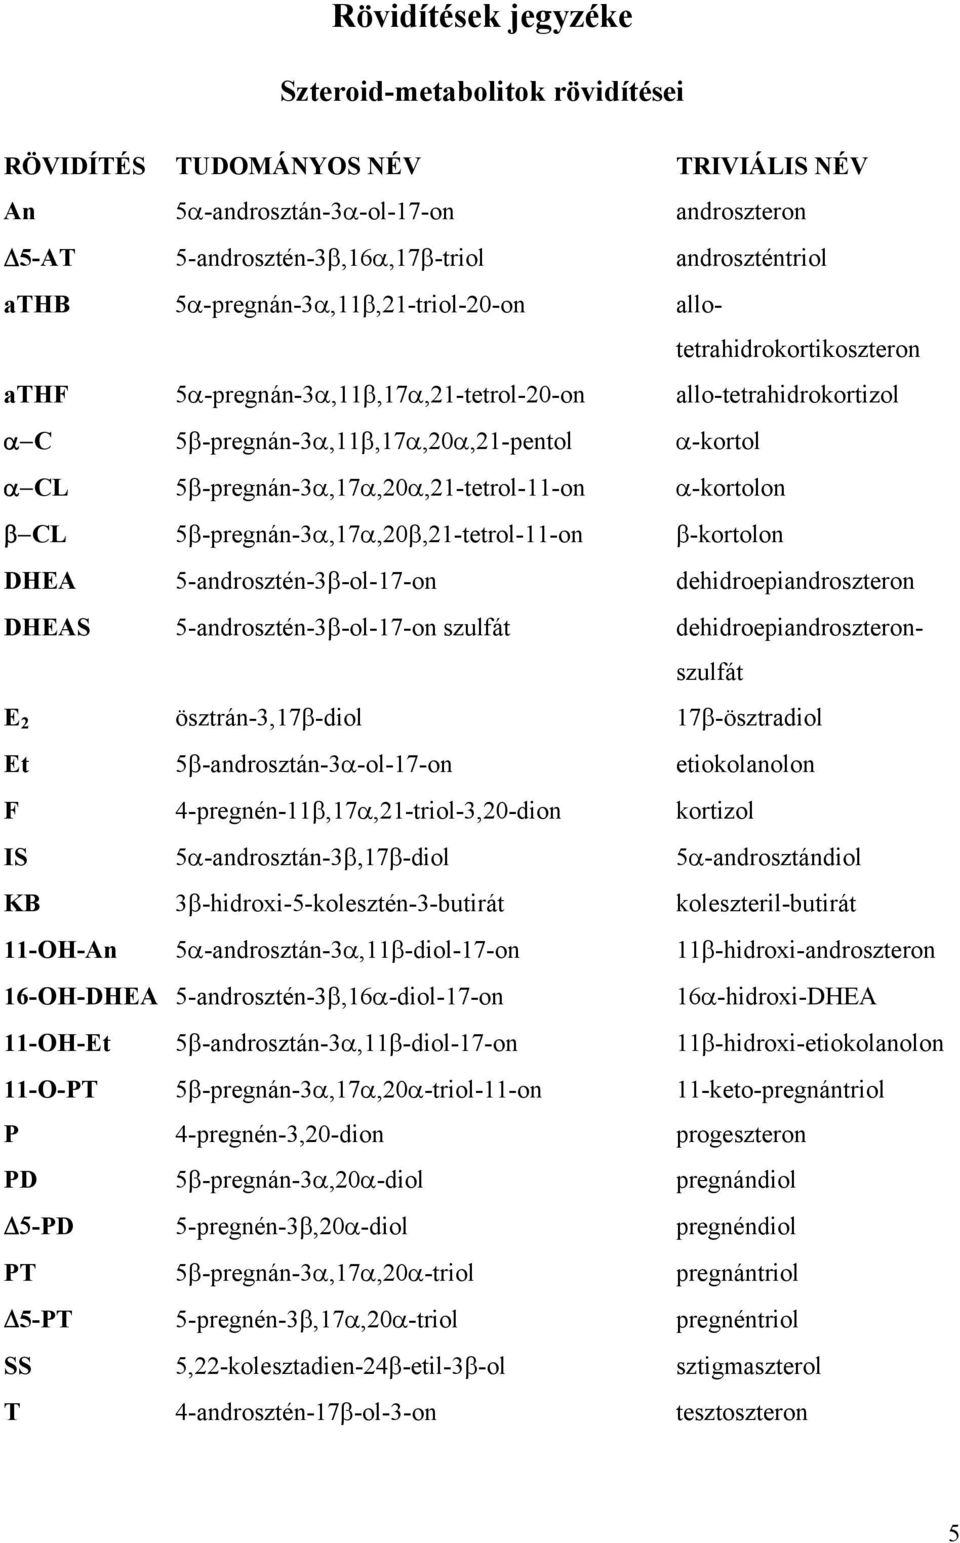 5β-pregnán-α,17α,20α,21-tetrol-11-on α-kortolon β L 5β-pregnán-α,17α,20β,21-tetrol-11-on β-kortolon DEA 5-androsztén-β-ol-17-on dehidroepiandroszteron DEAS 5-androsztén-β-ol-17-on szulfát